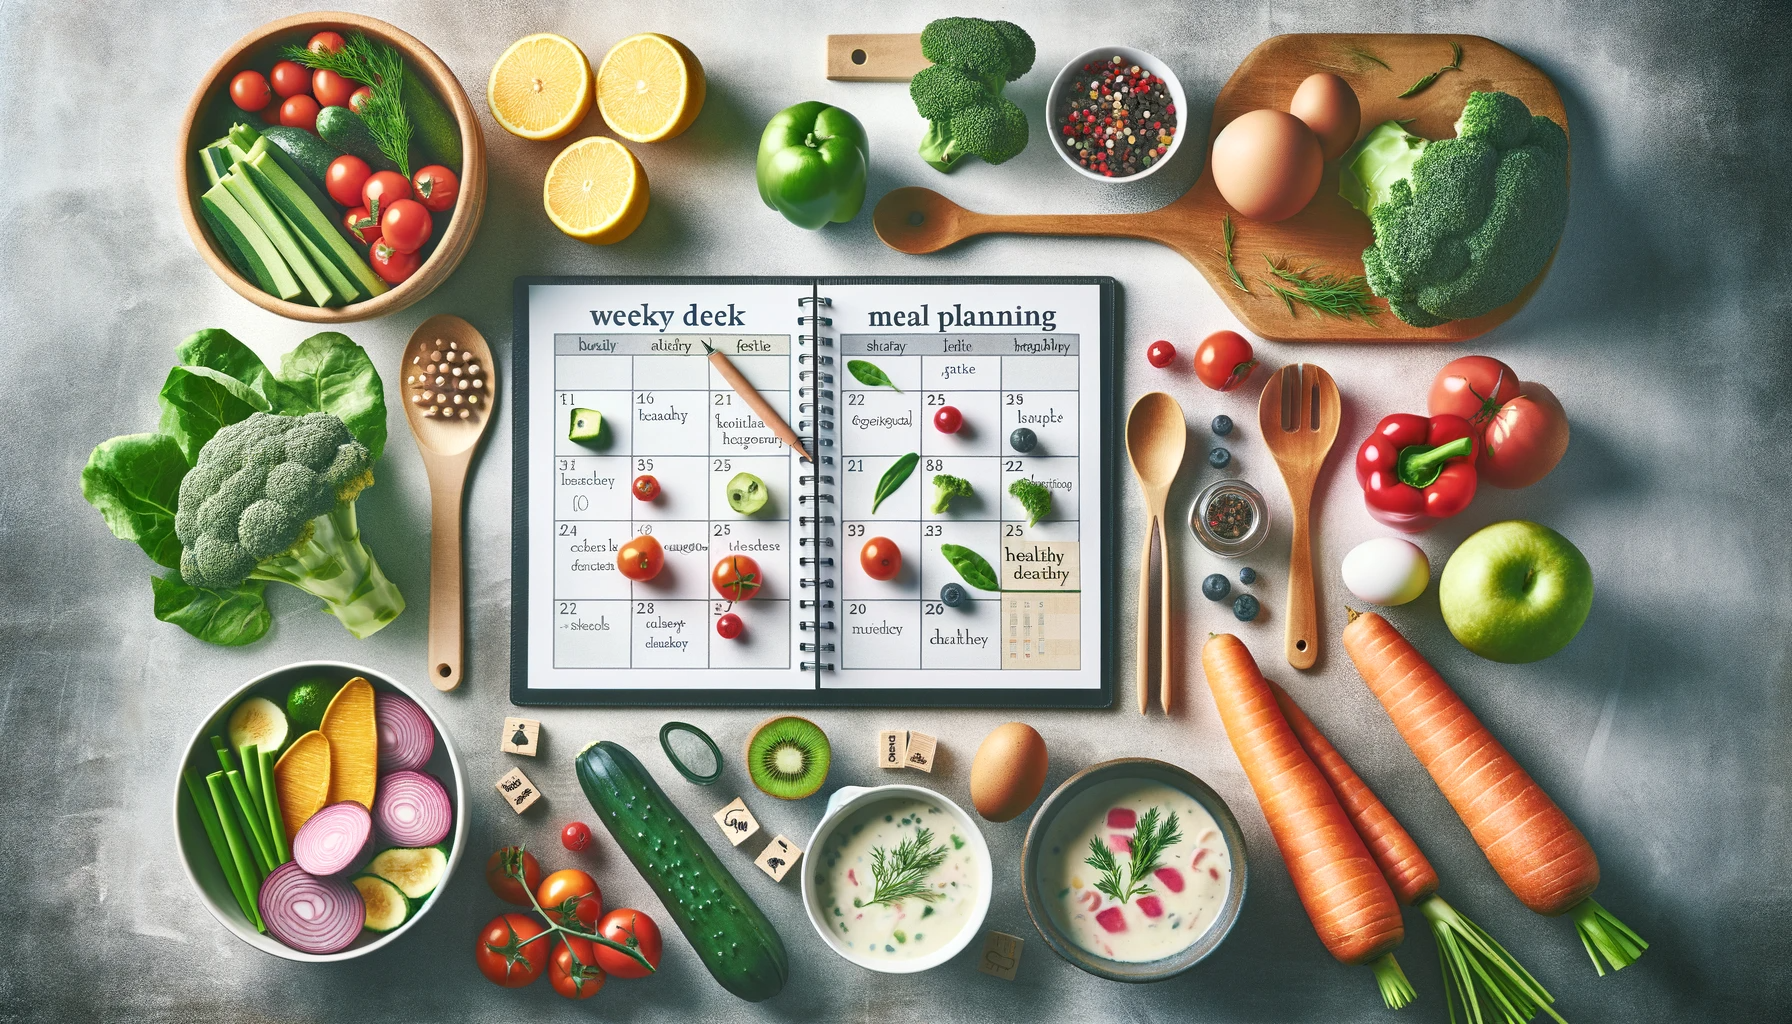 Descubre estrategias y consejos para planificar tus comidas semanales y mantener una dieta equilibrada, incluyendo preparación de alimentos y elección de ingredientes saludables.